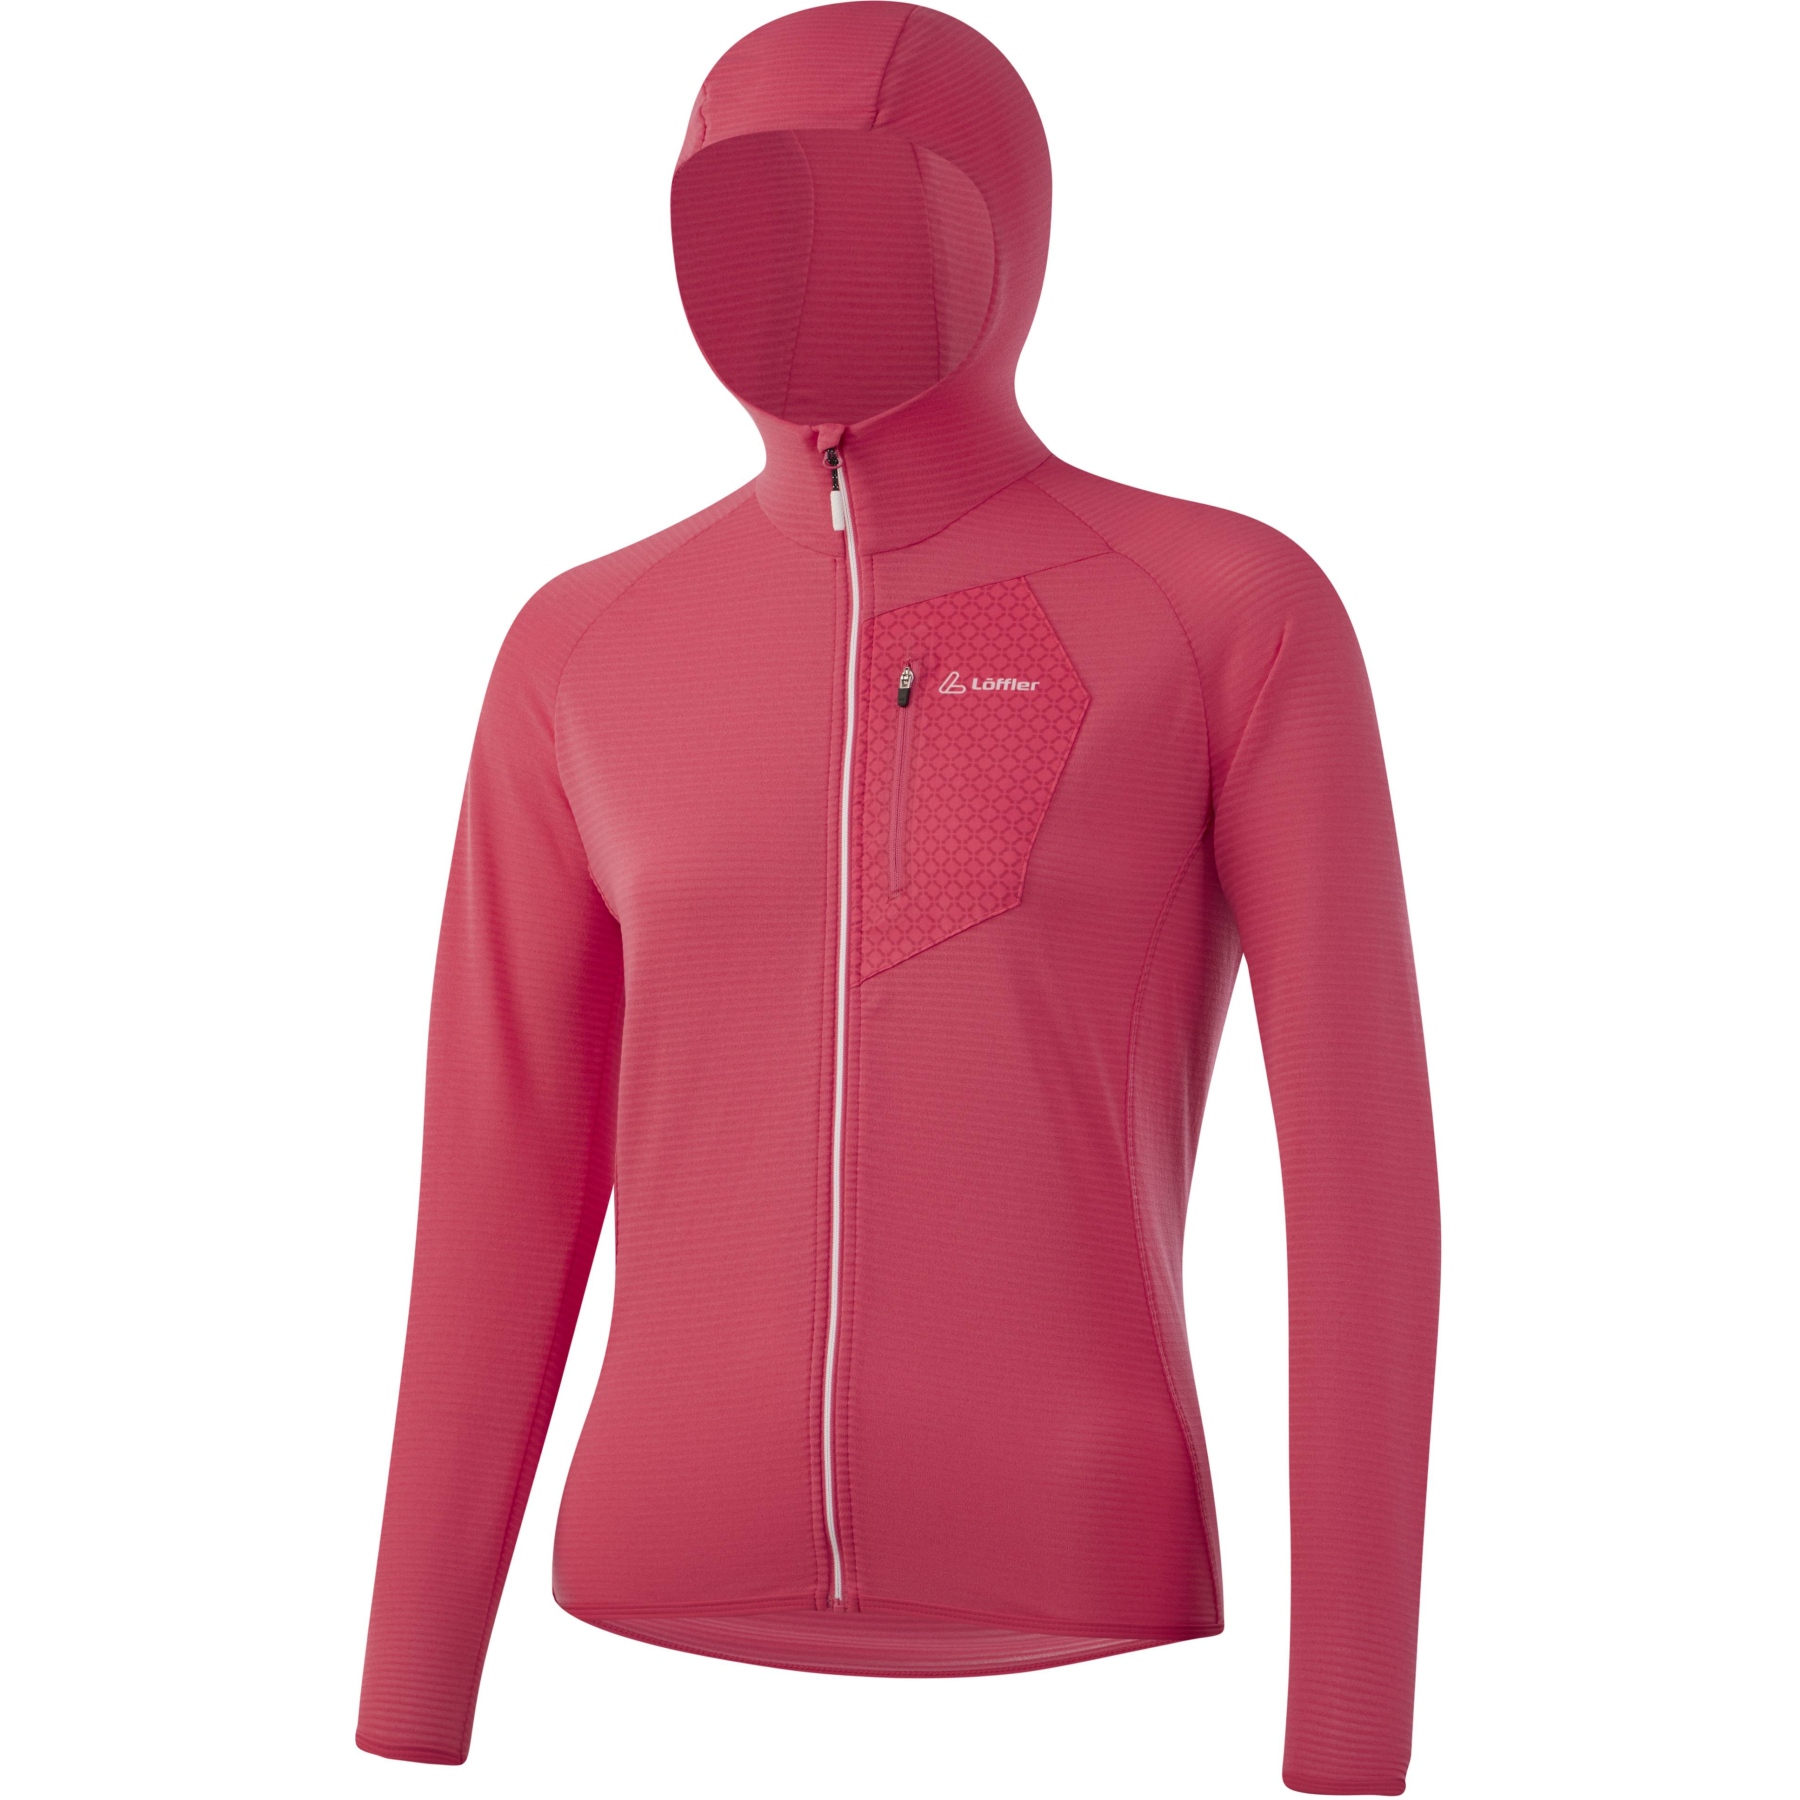 Image of Löffler Full Zip Techfleece Women's Hoody Jacket - rouge red 561